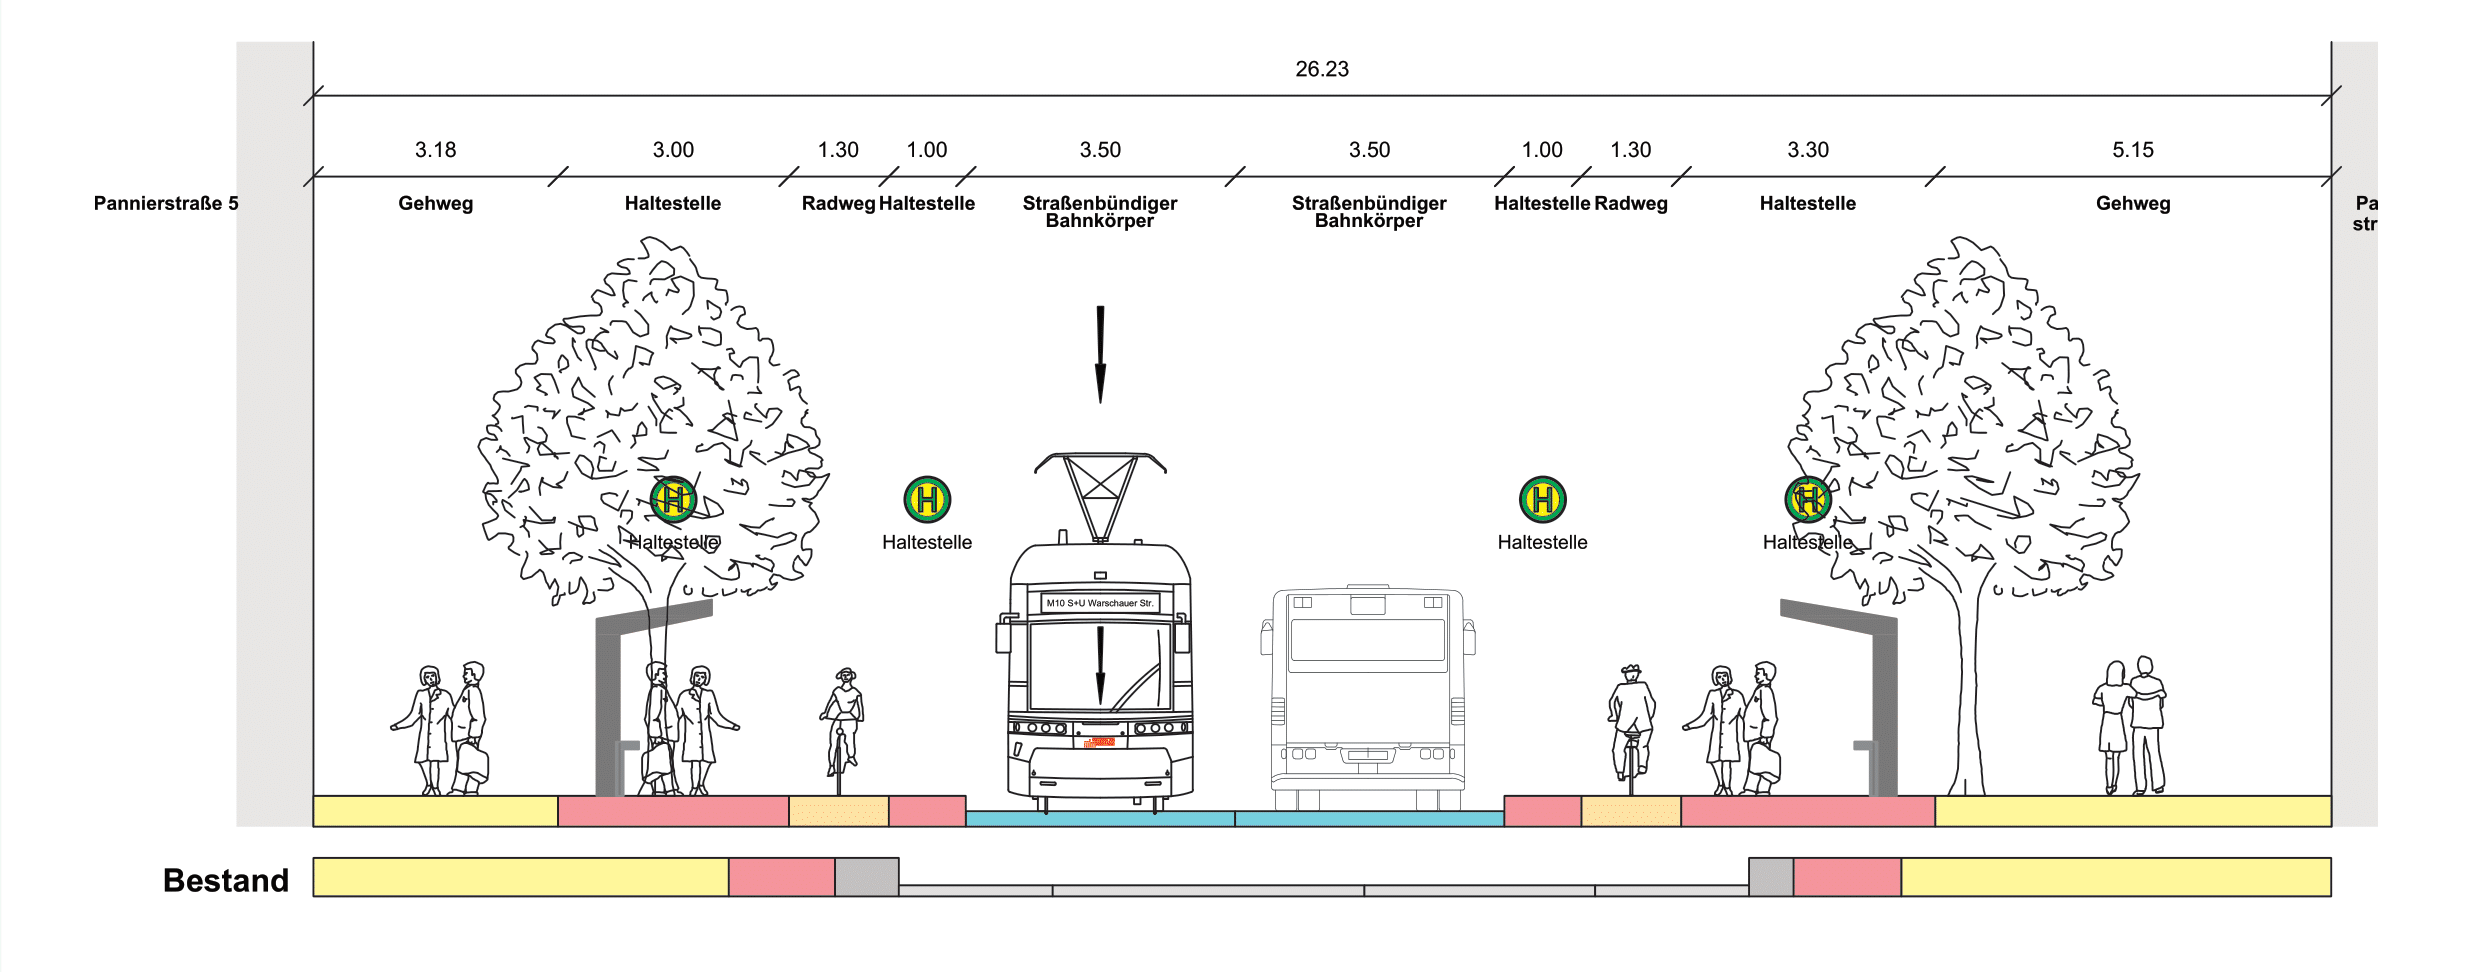 Diese Abbildung zeigt den Querschnitt der Straßenbahnhaltestelle in Mittellage des Bauabschnitts Pannierstraße als eine technische Zeichnung